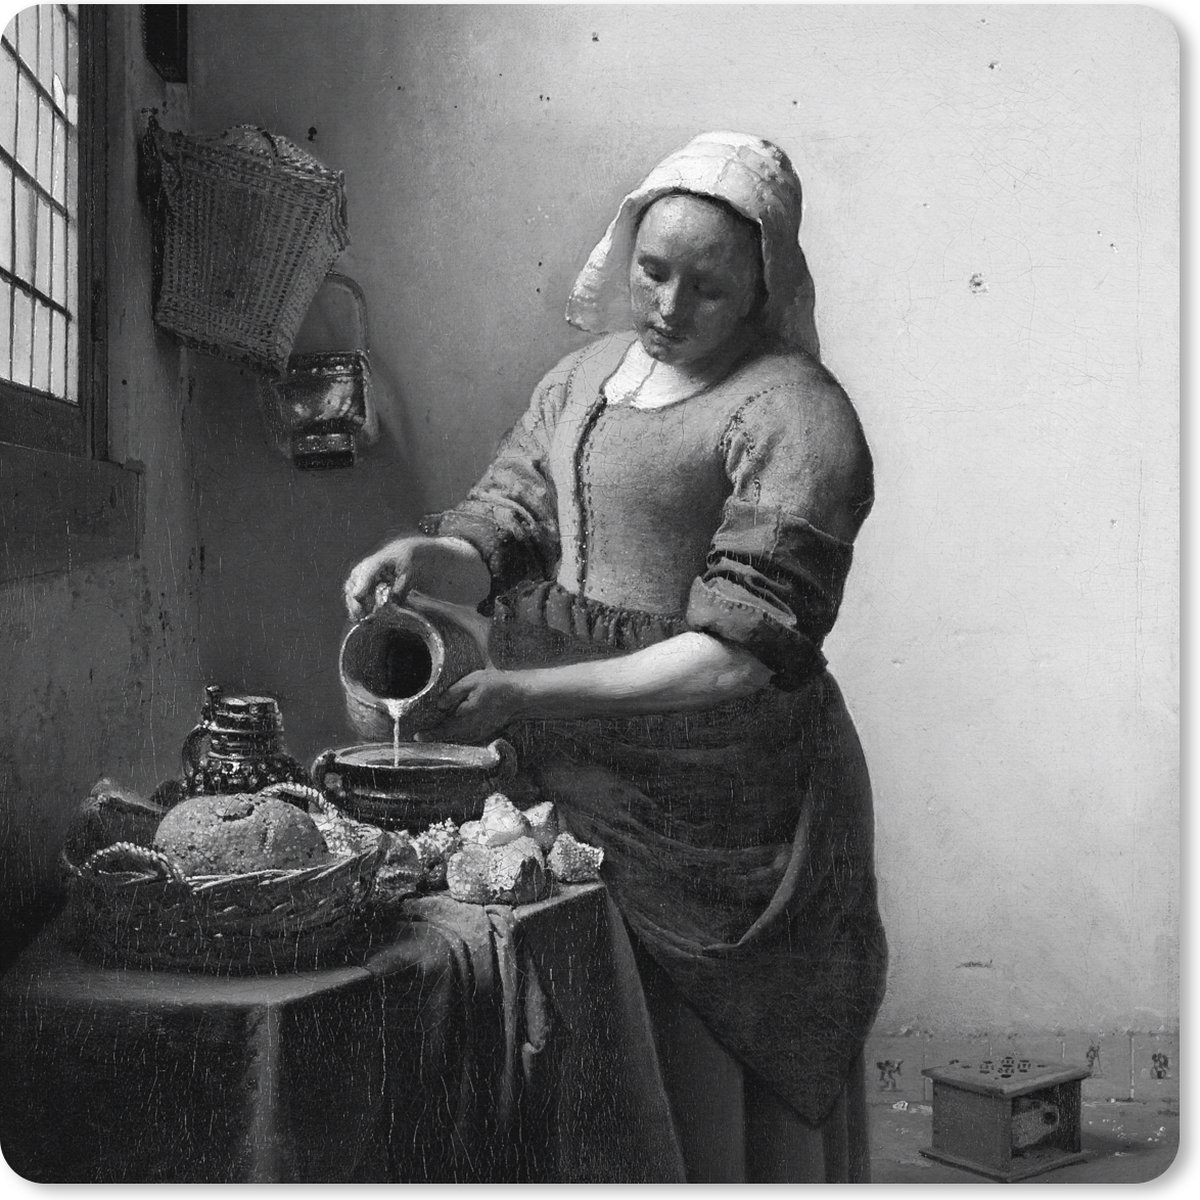 Muismat XXL - Bureau onderlegger - Bureau mat - Het melkmeisje - Schilderij van Johannes Vermeer - zwart wit - 60x60 cm - XXL muismat